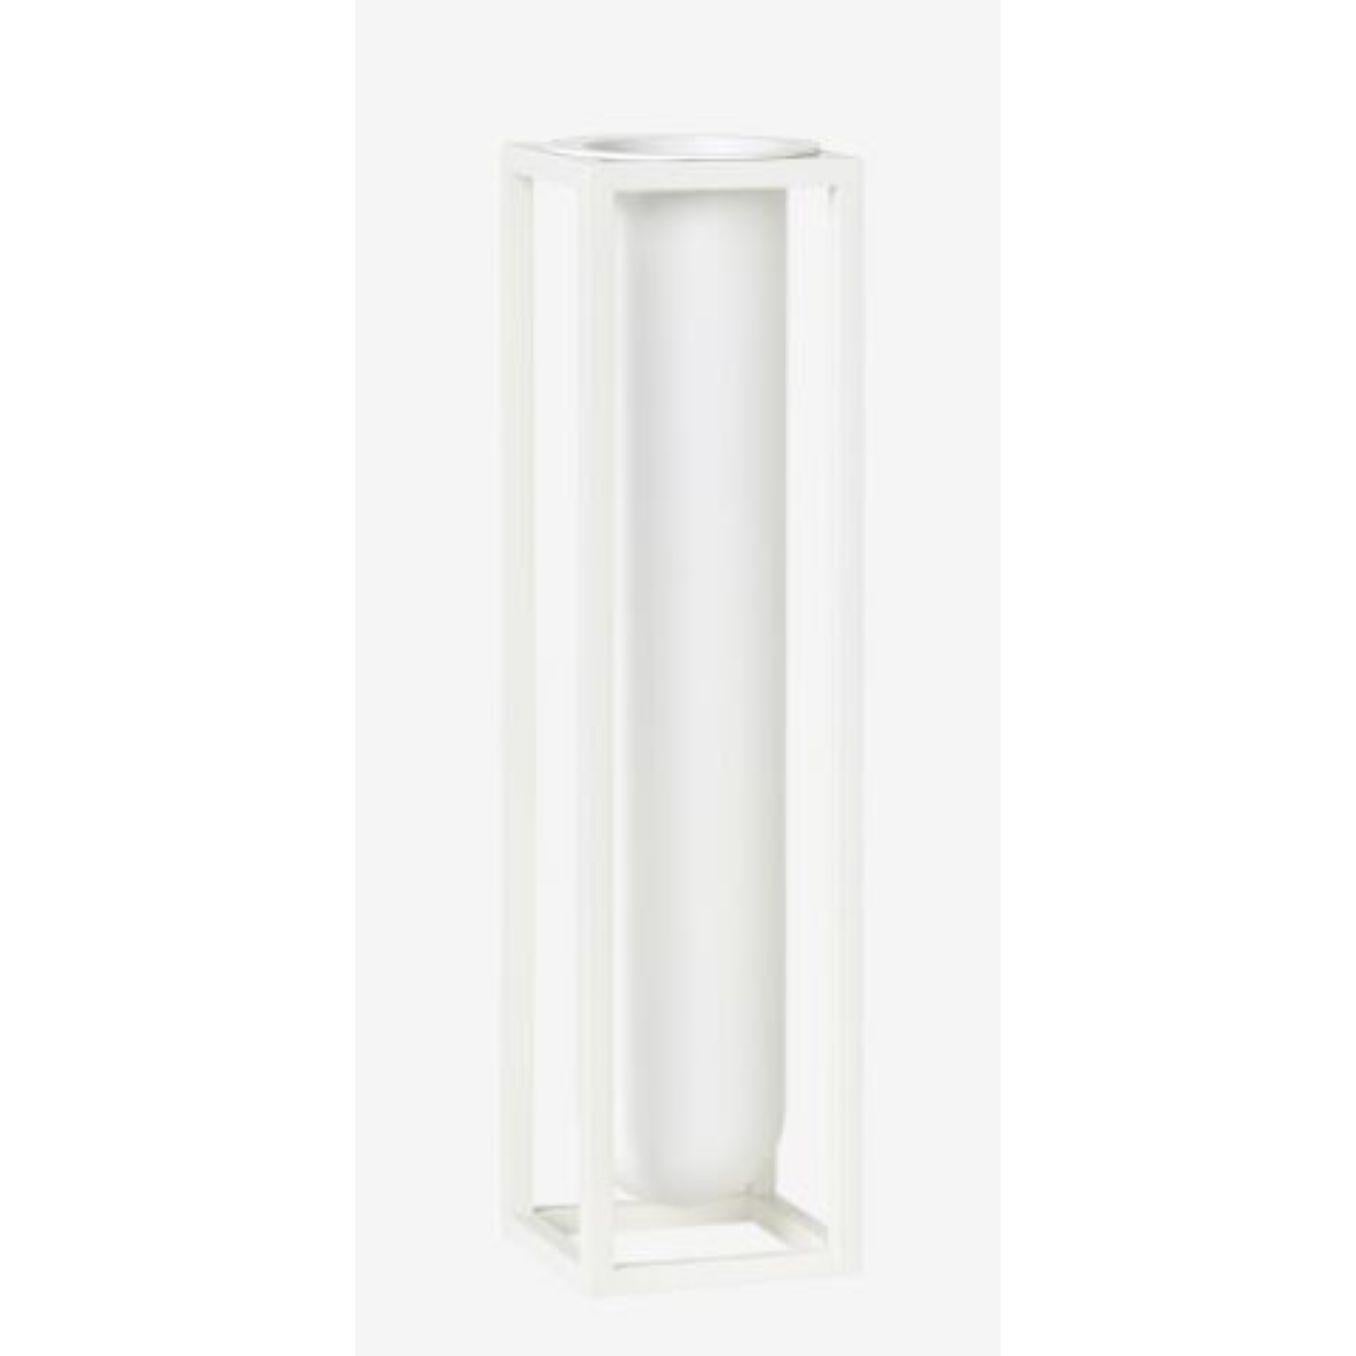 Weiße Flora Kubus Vase von Lassen
Abmessungen: D 6 x B 6 x H 24 cm 
MATERIALIEN: Metall 
Gewicht: 2.00 kg

Wenn die Sonnenstrahlen durch die Fenster gleiten, laden Sie die Natur ins Haus ein, indem Sie eine elegante Blume in die Kubus Vase Flora